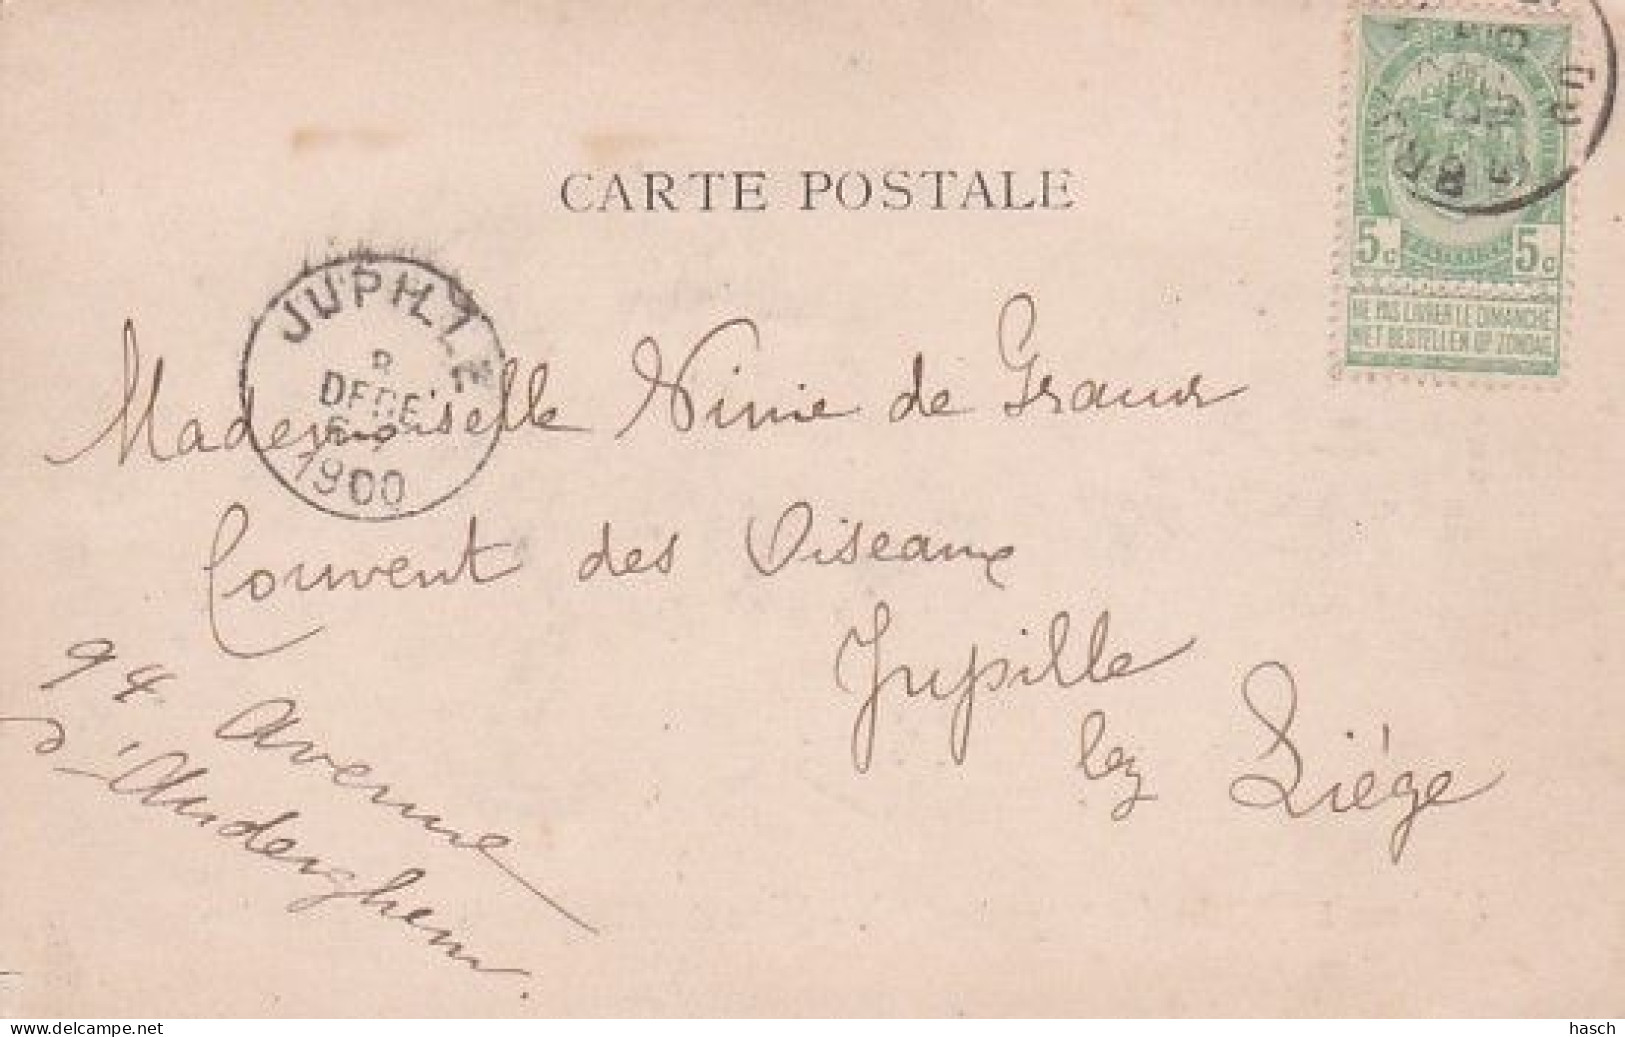 1830	5	Prétoria, Une Rue à Prétoria - Eene Straat Le Prétoria (by Regenweder) (postmark 1900) - Afrique Du Sud